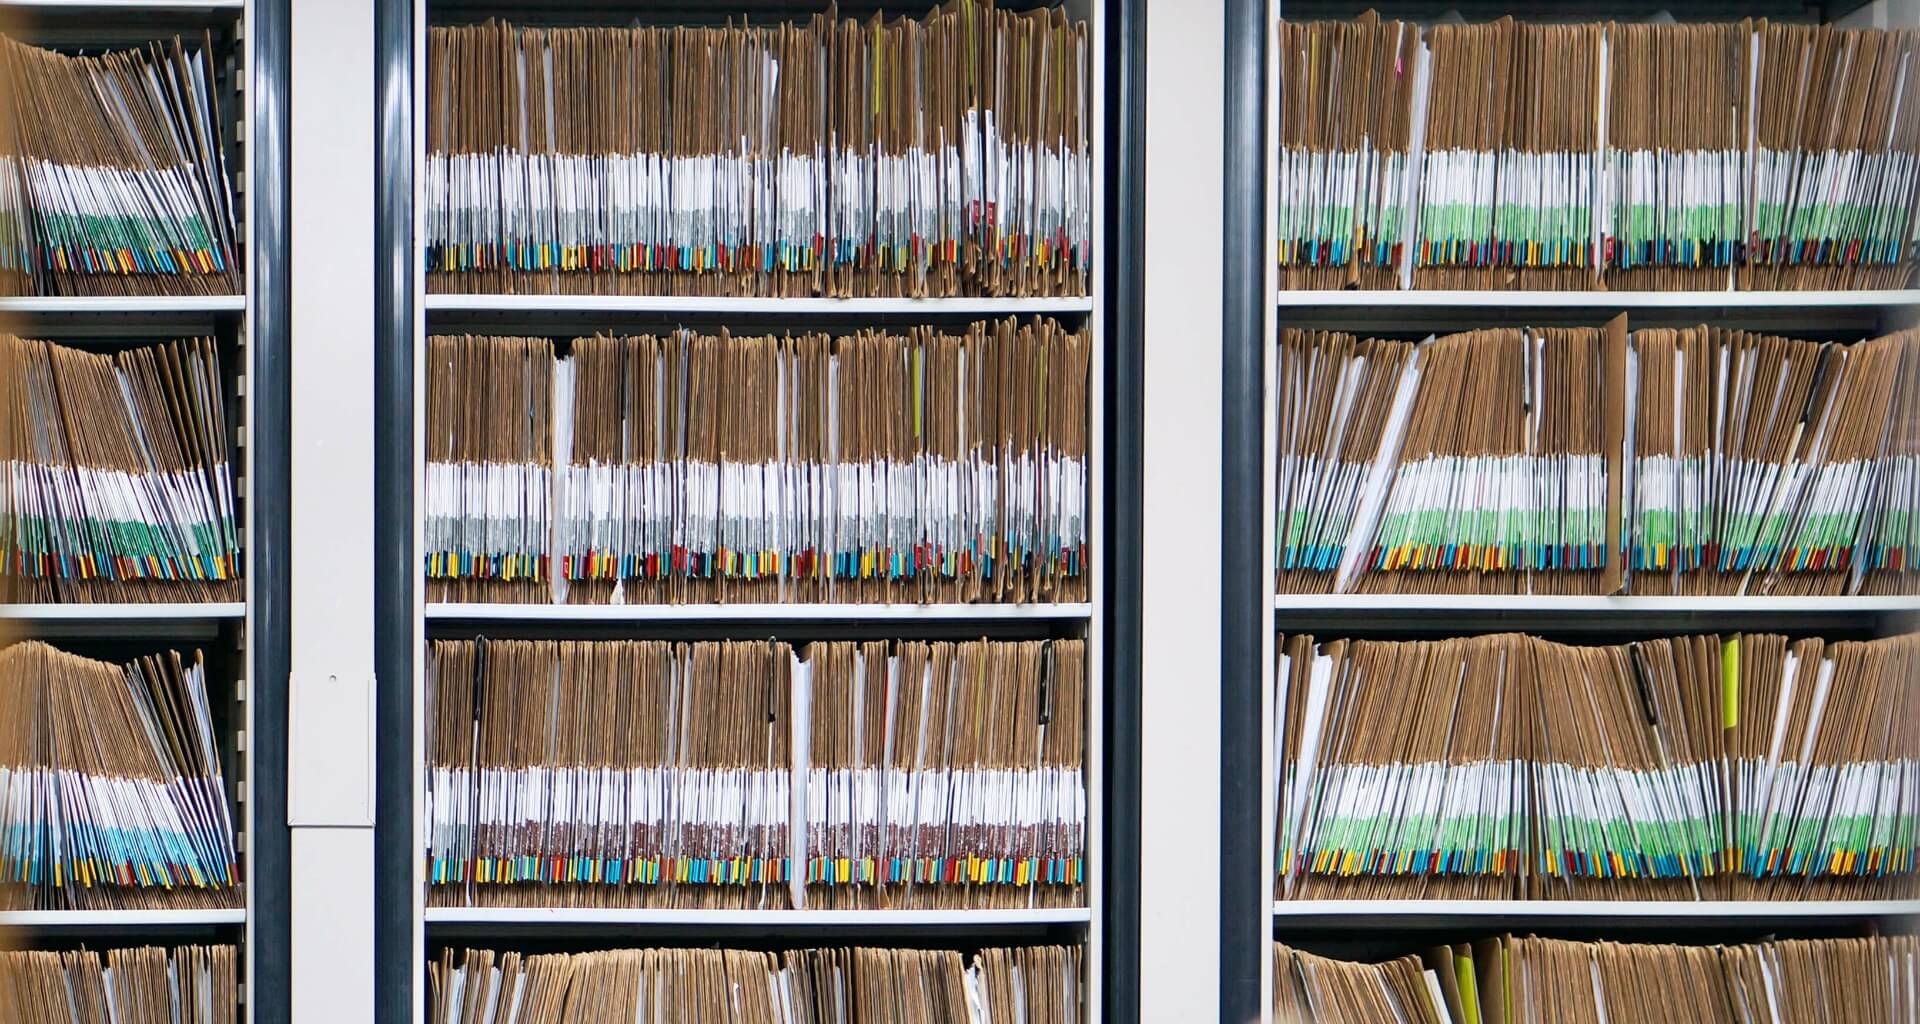 Bookshelves full of patient files